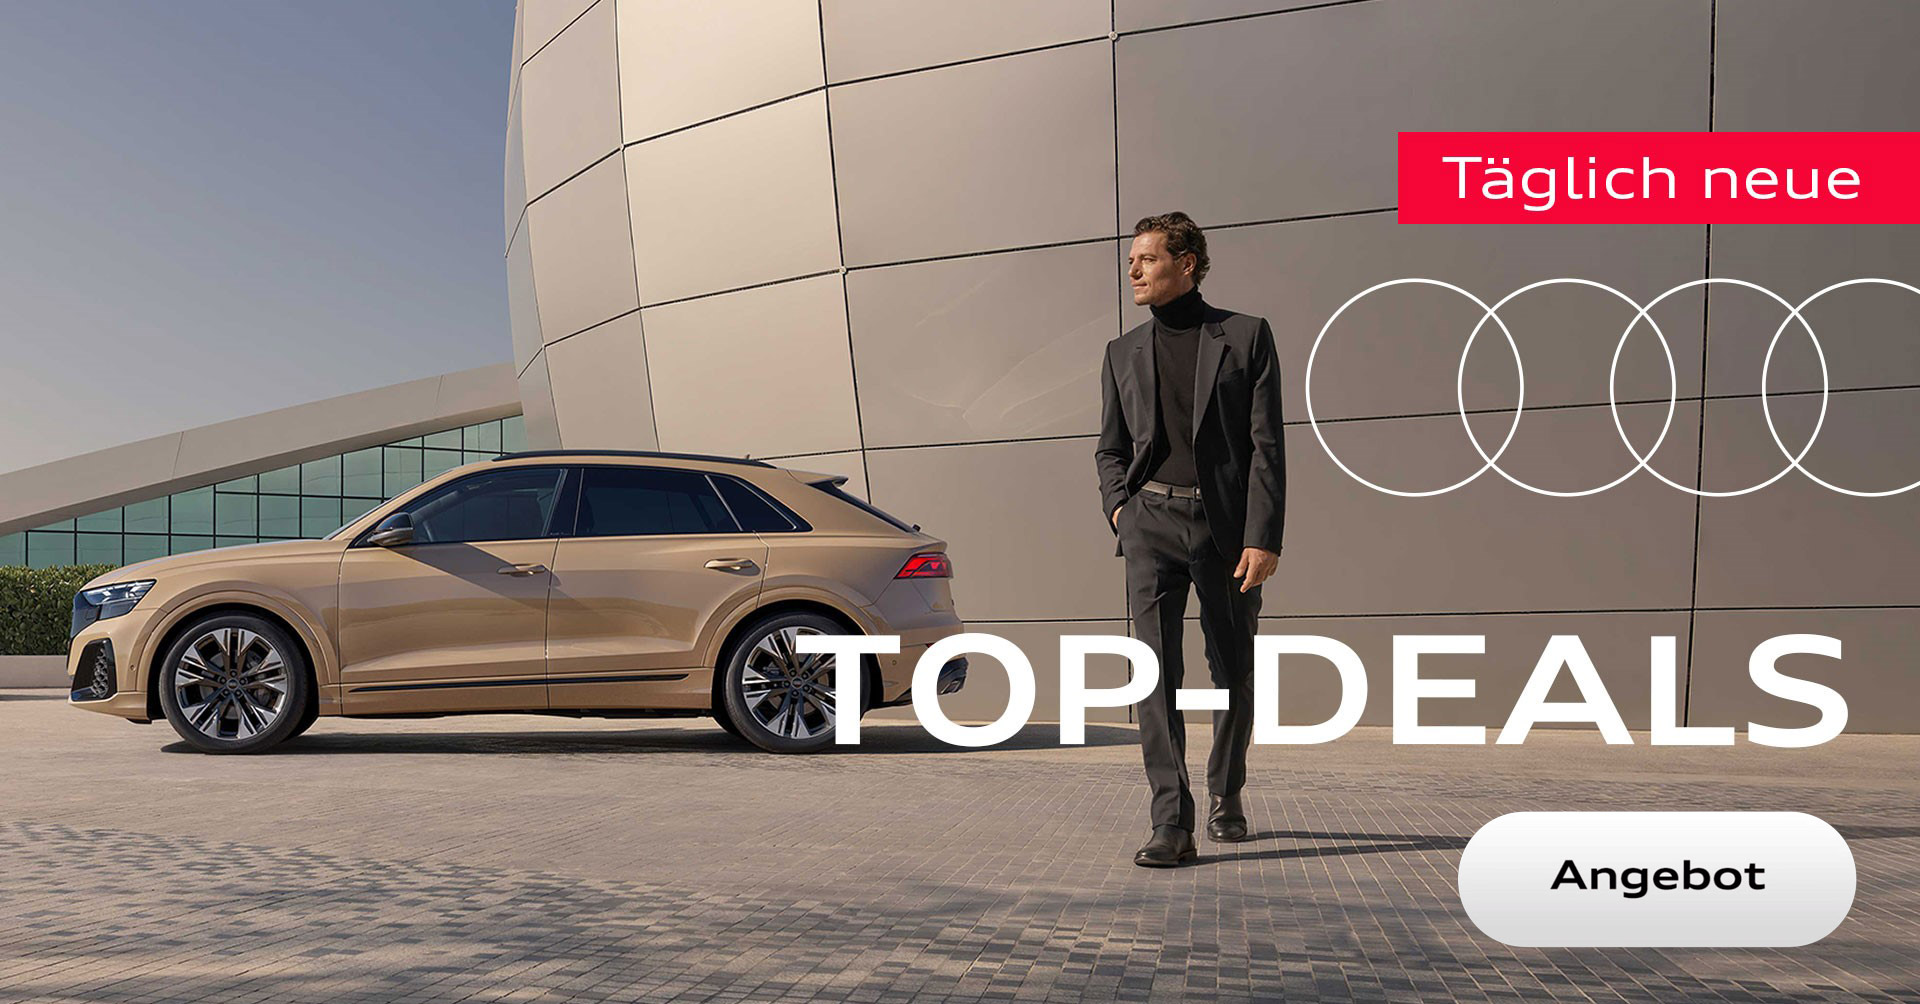 Täglich neue Audi Top Deals!